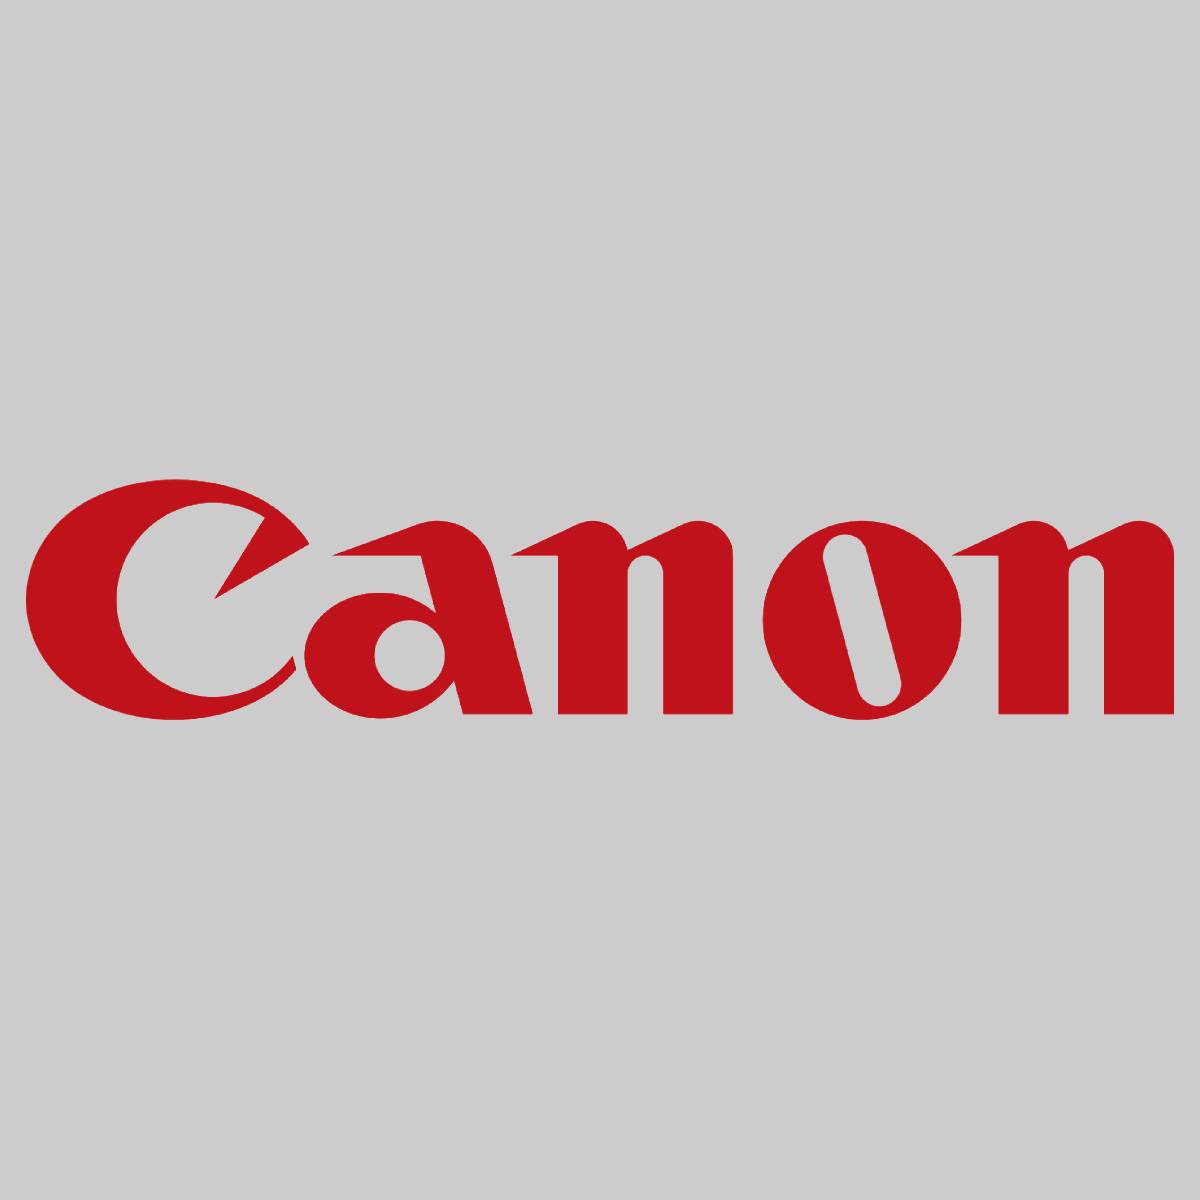 "Original Canon C-EXV55 Toner Magenta 2184C002 for IR ADV C256-C356 NEW OVP^